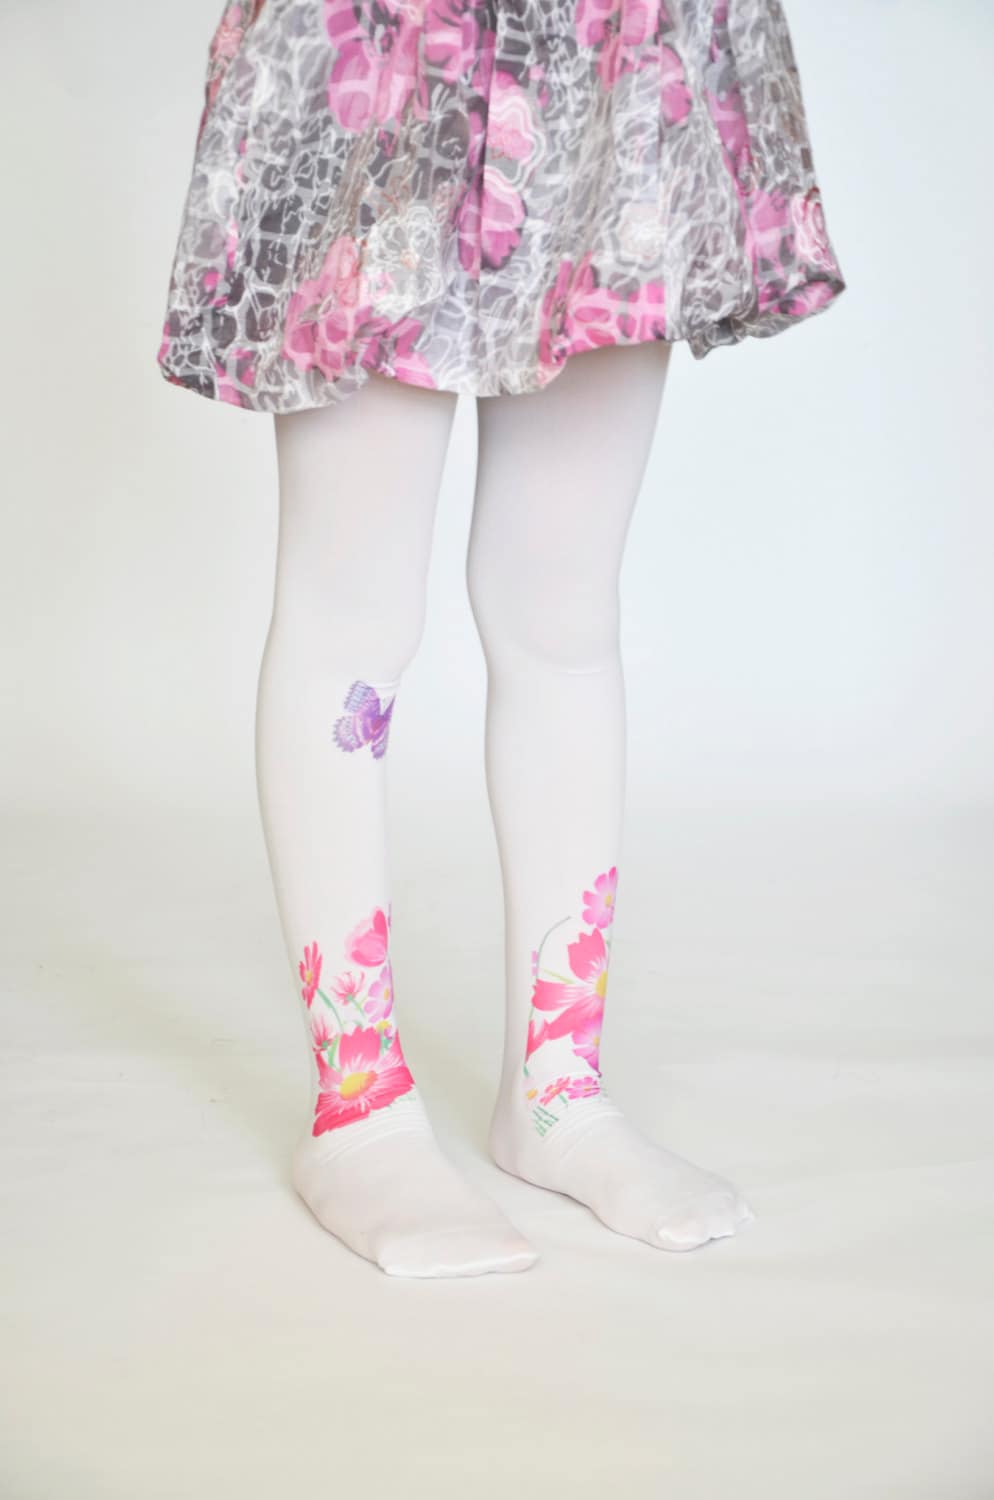 Kirkland Girl's Leggings / Girls Large (10-12) / Flower Print and